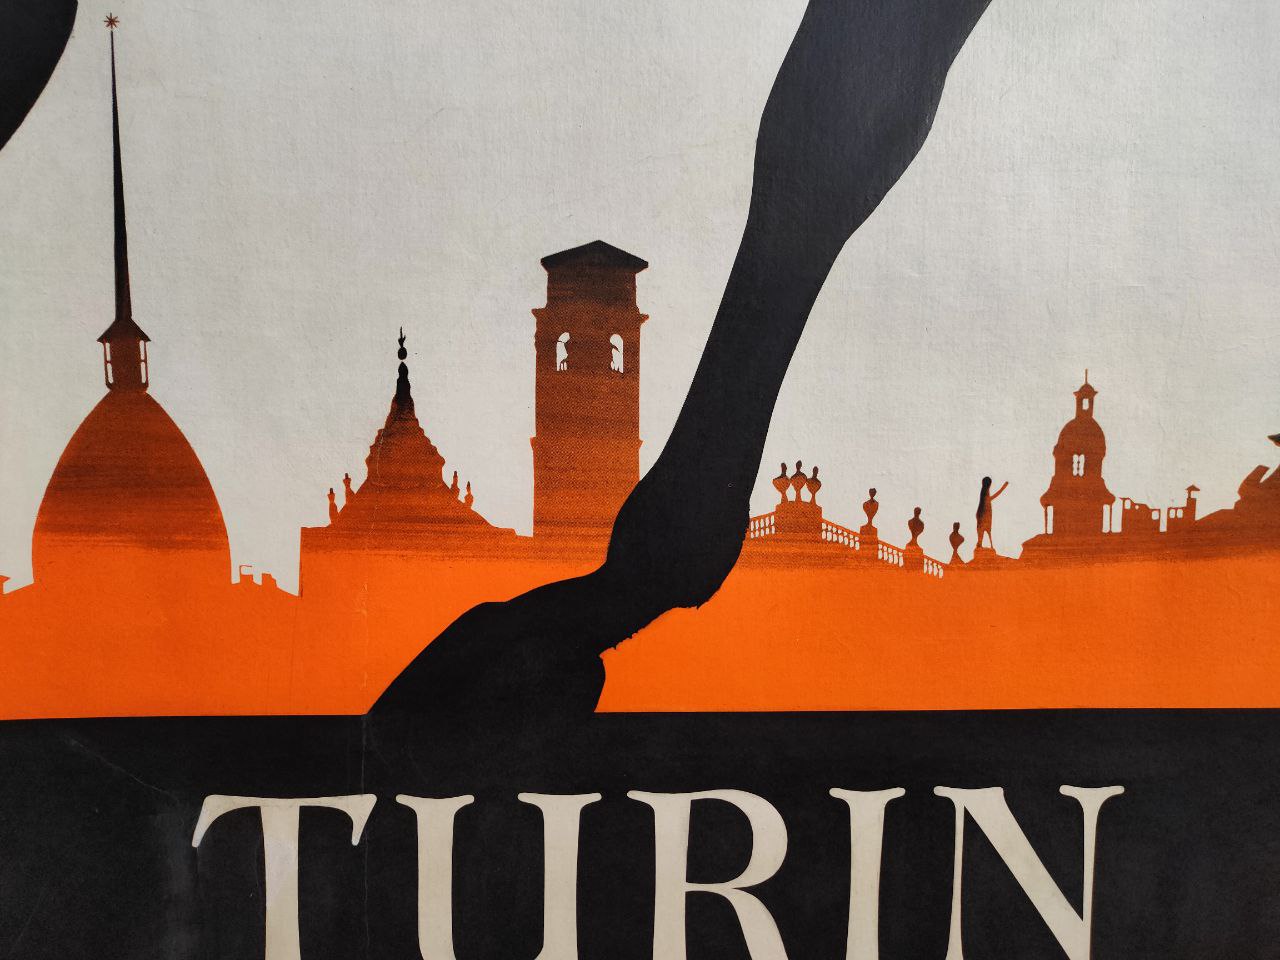 Manifesto originale pubblicitario - Turin Italie